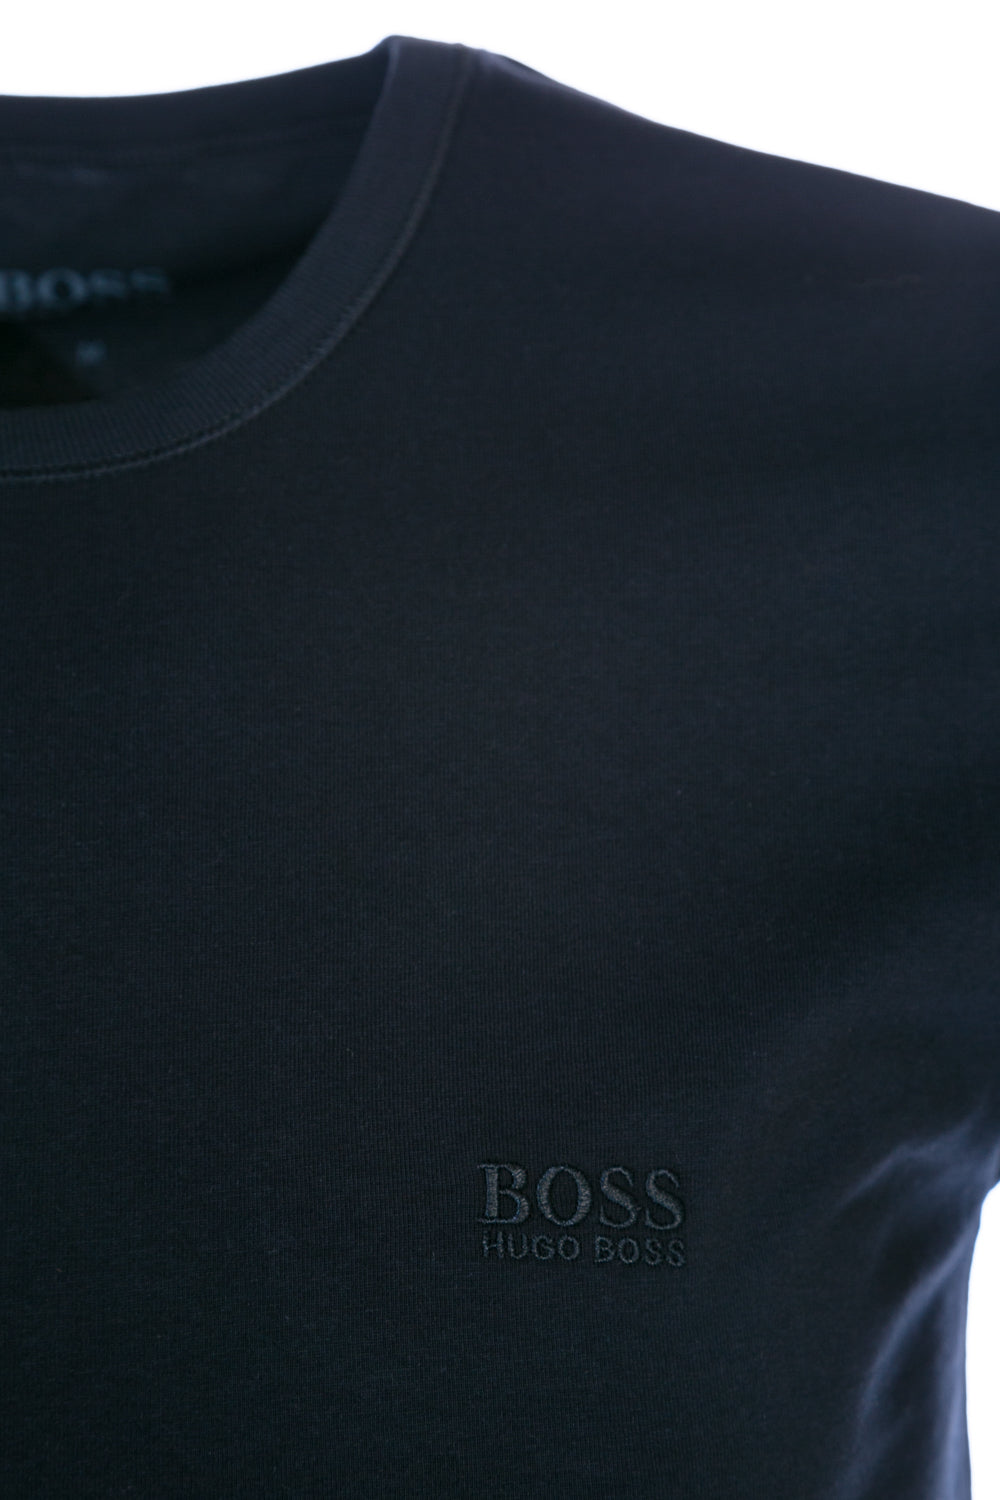 BOSS 3 Pack RN T-Shirt in Khaki, Navy & White